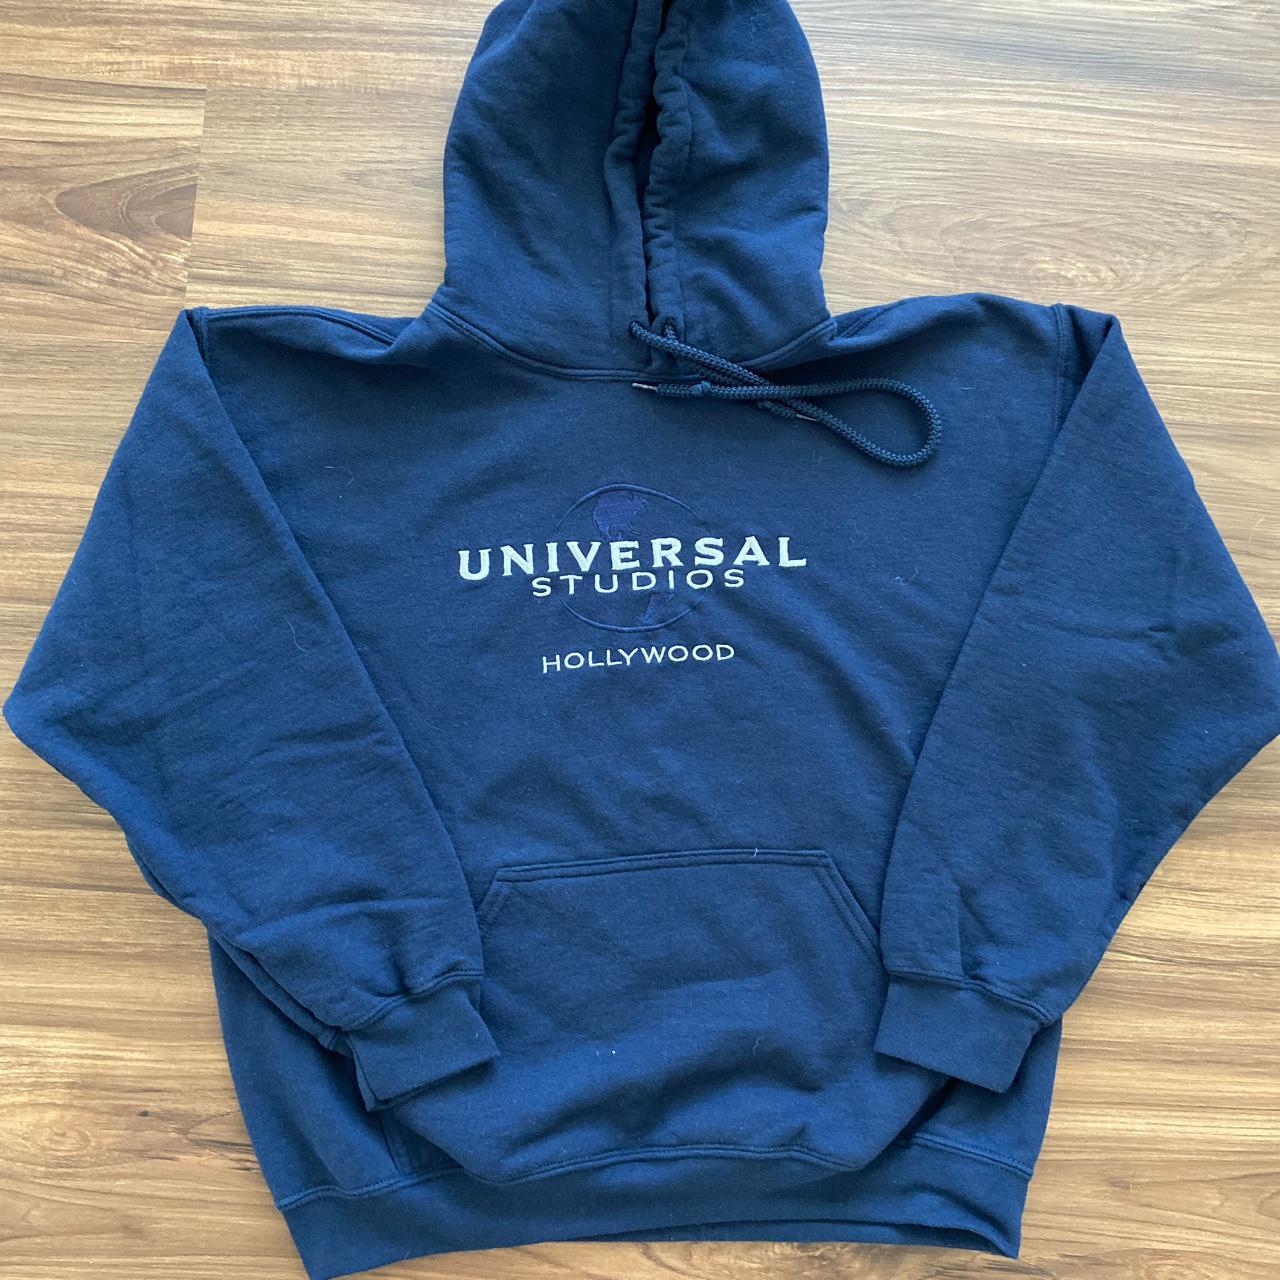 Universal studios Hollywood hoodie size M 21 1/2 x... - Depop